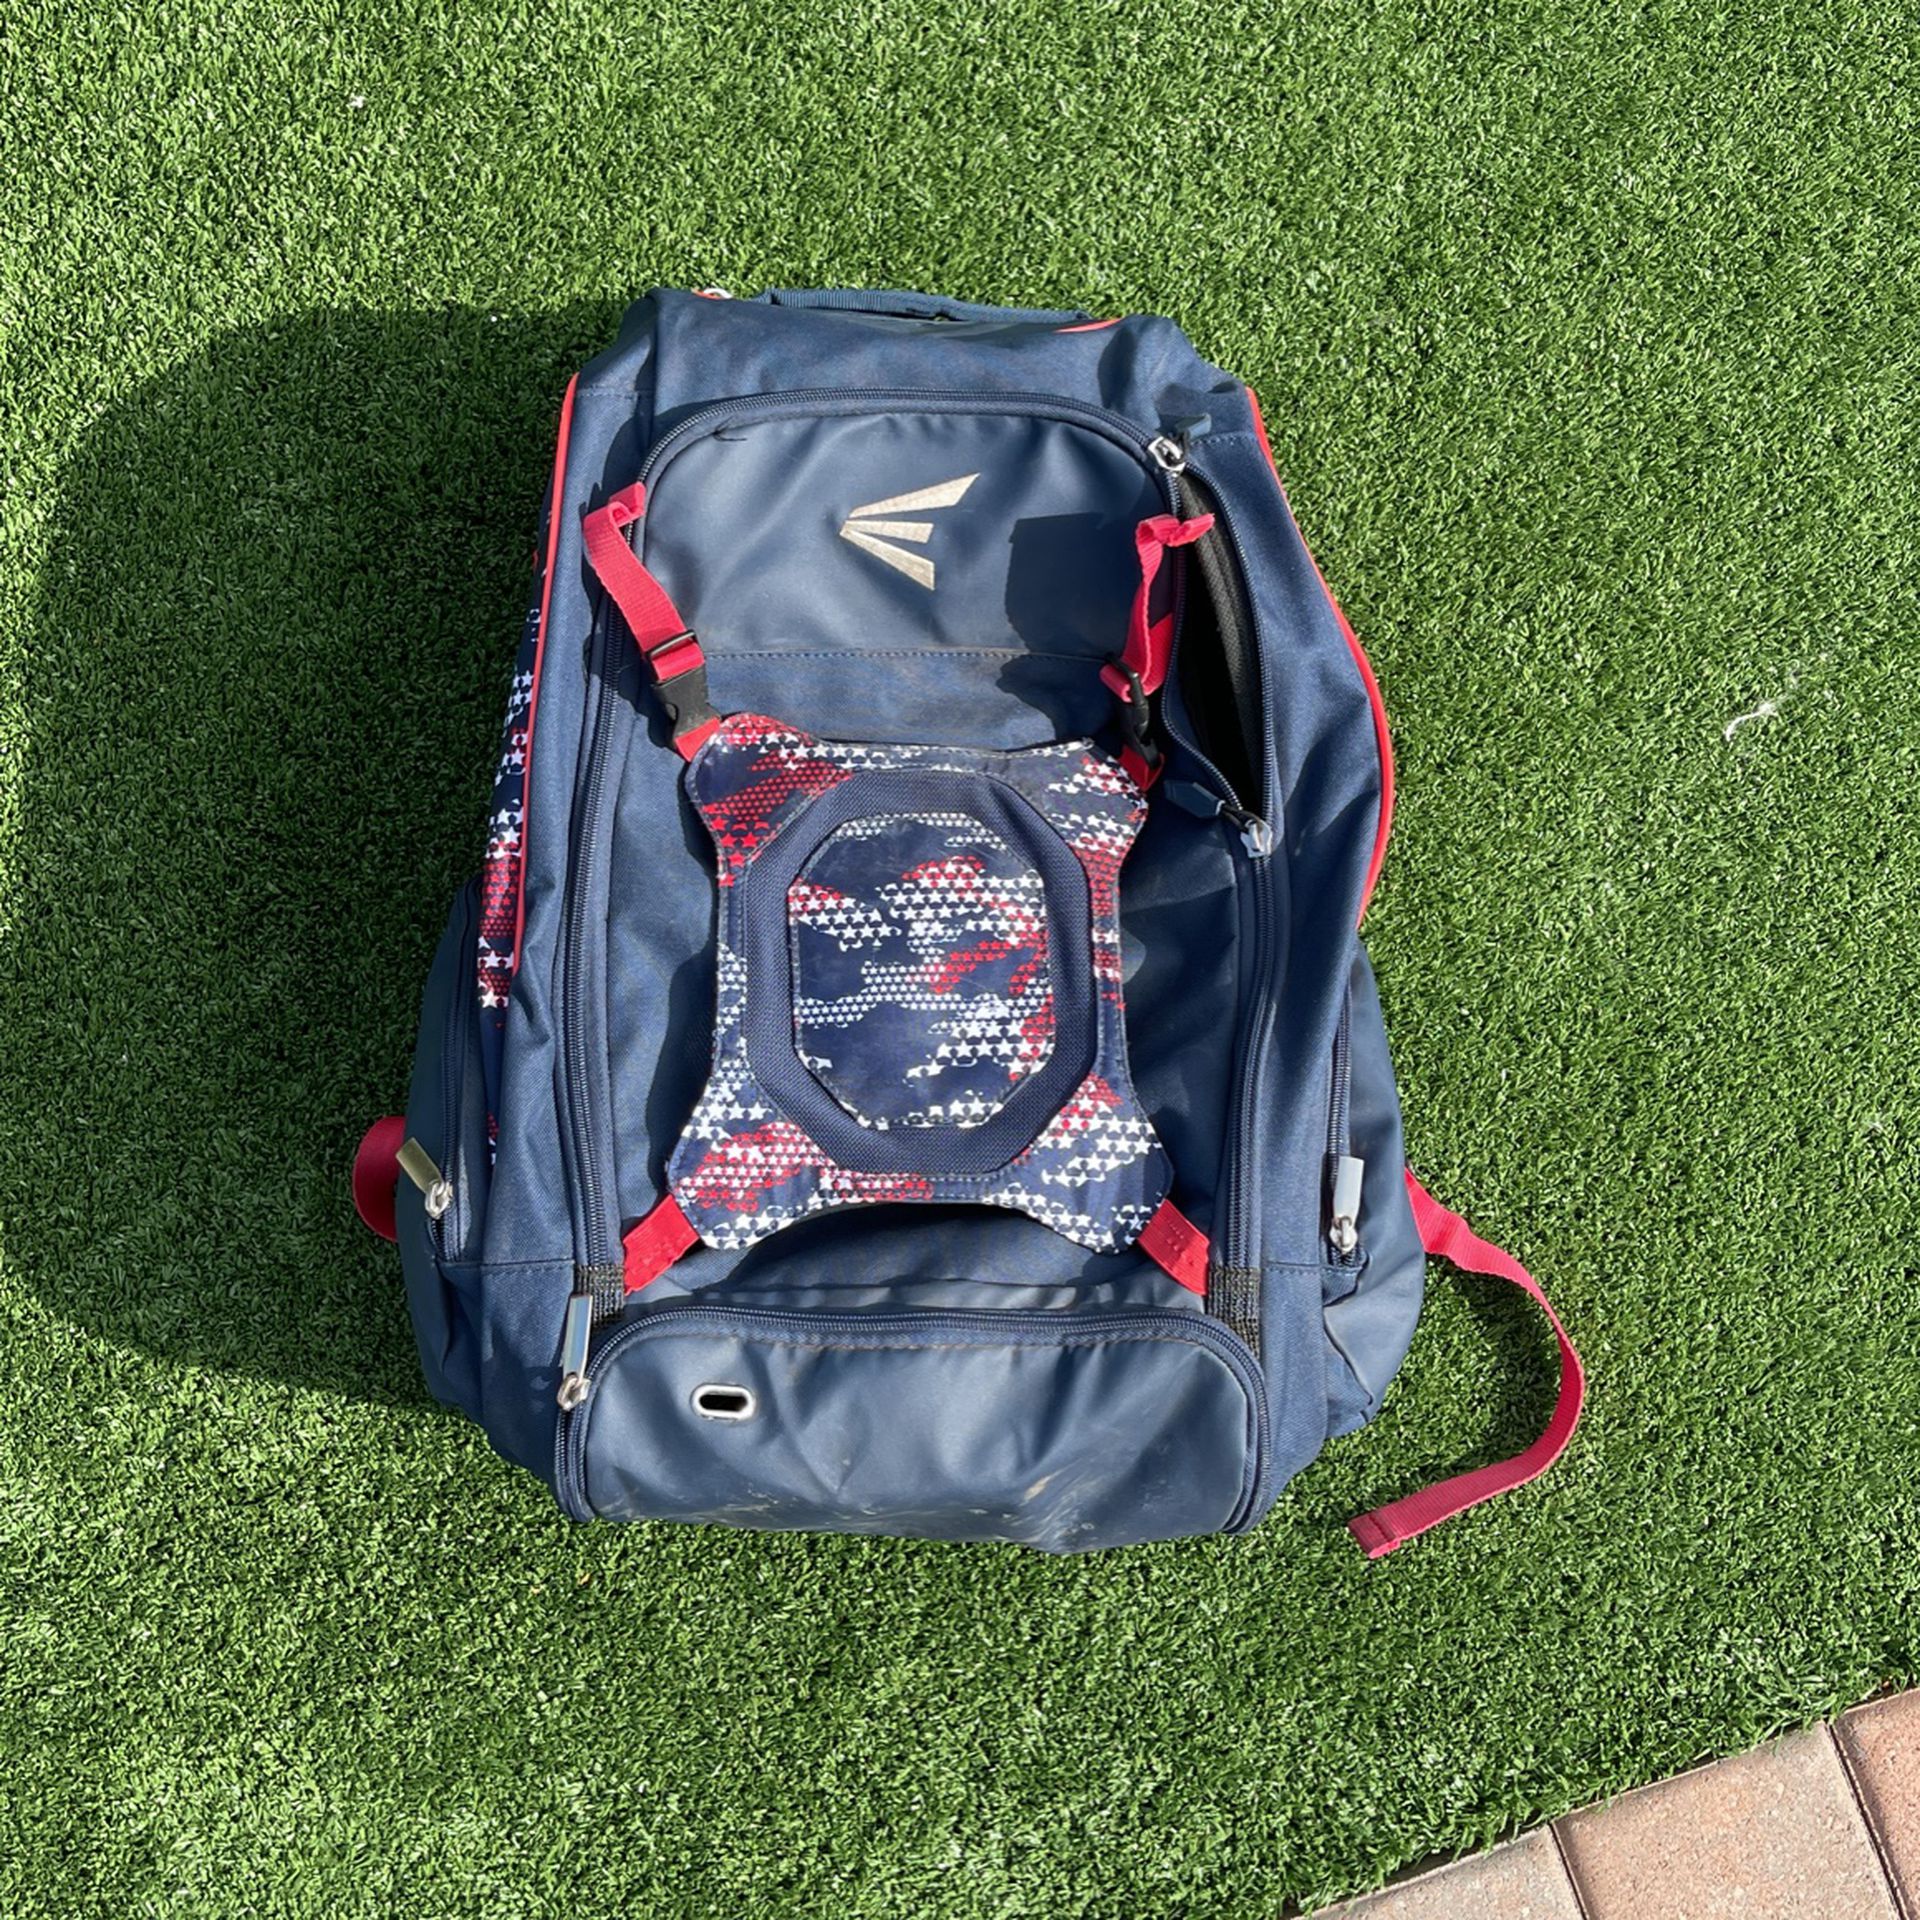 Easton Softball/Baseball Bag